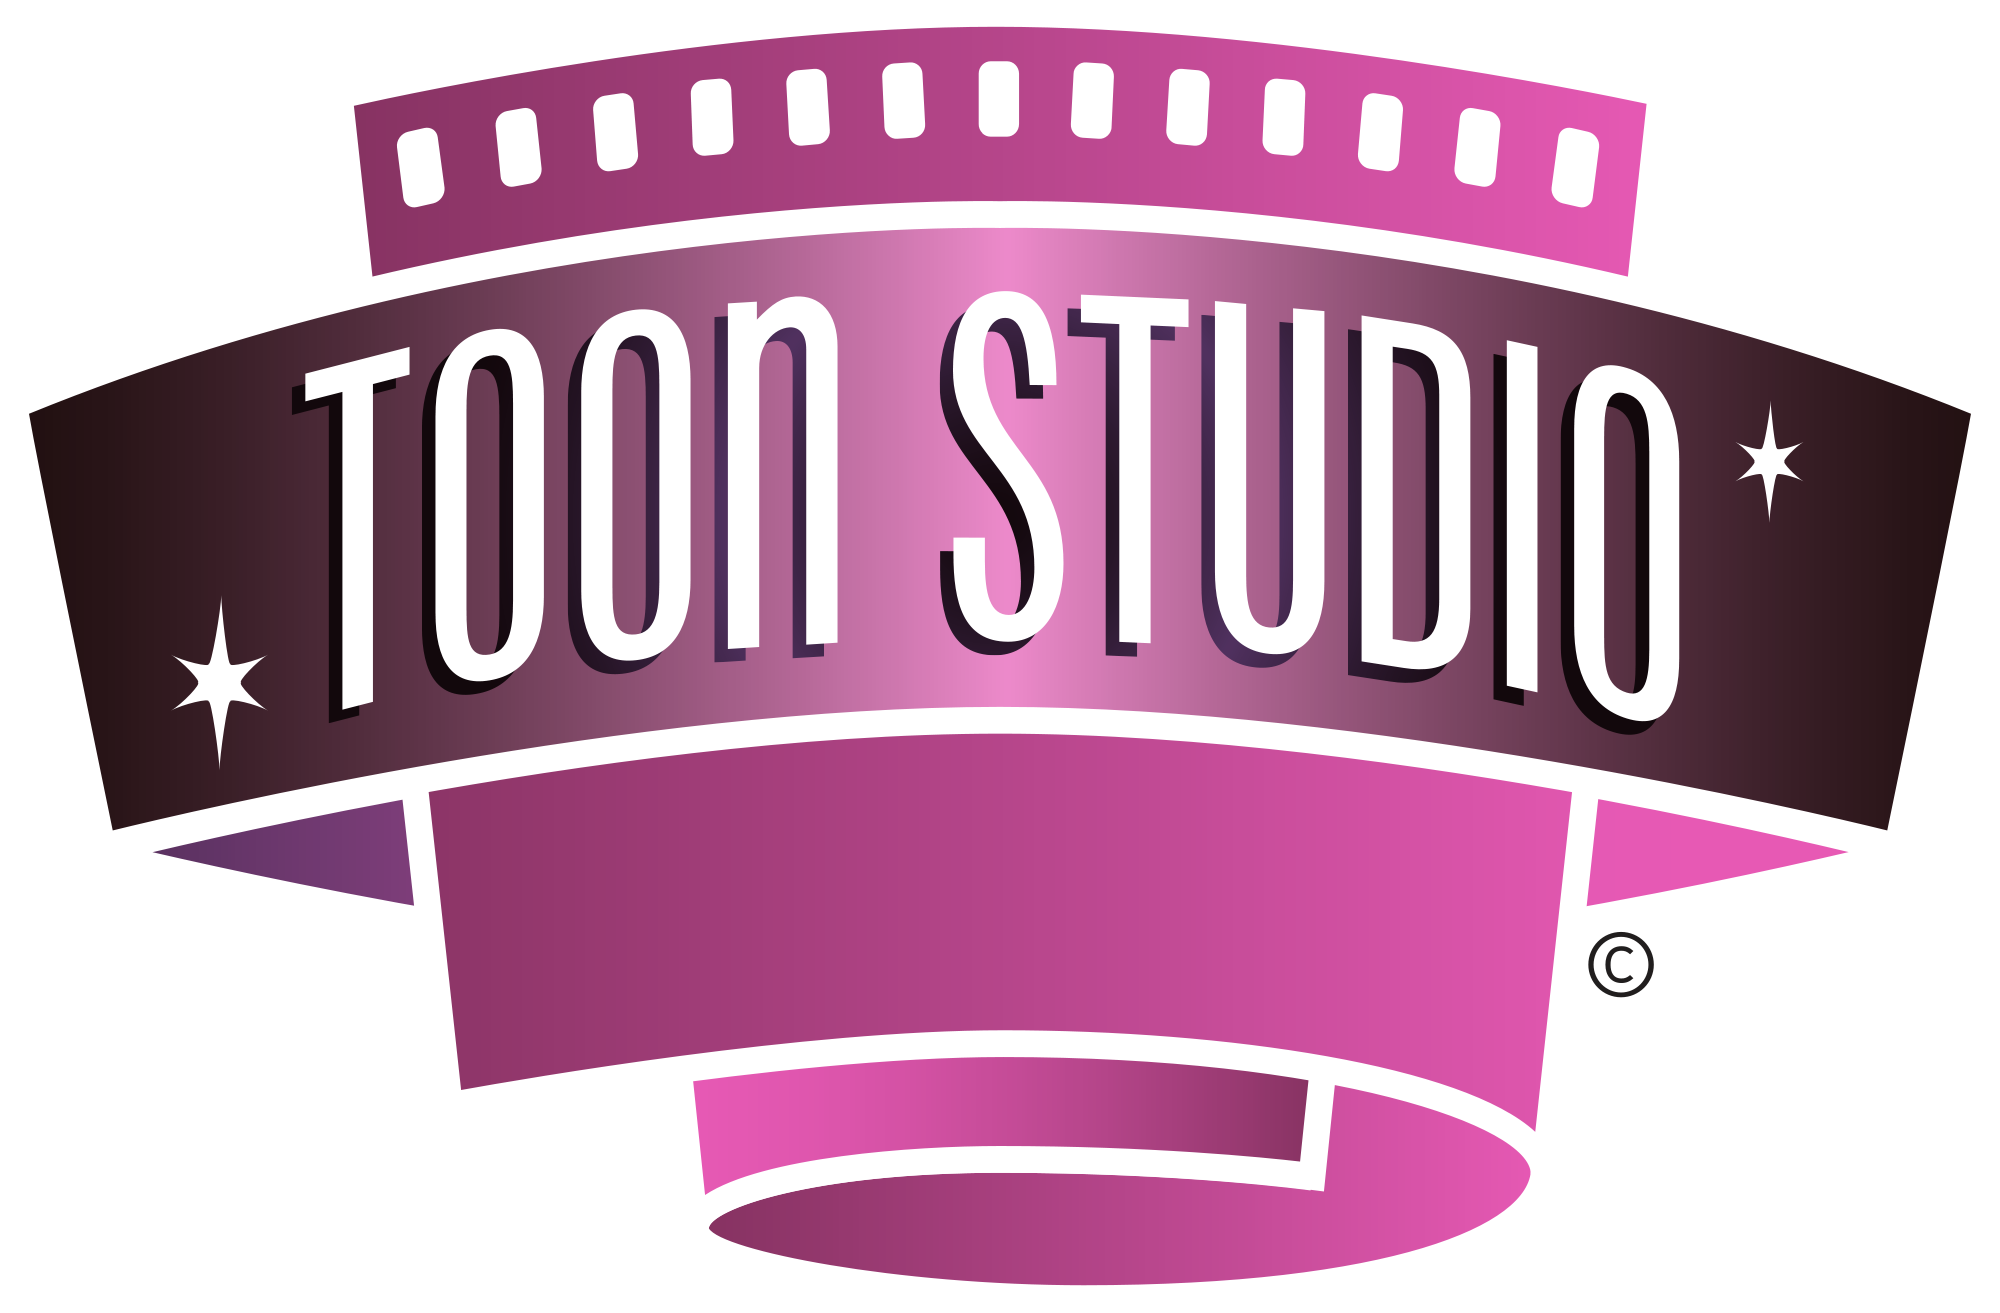 Download Toon Studio | Disney Wiki | FANDOM powered by Wikia